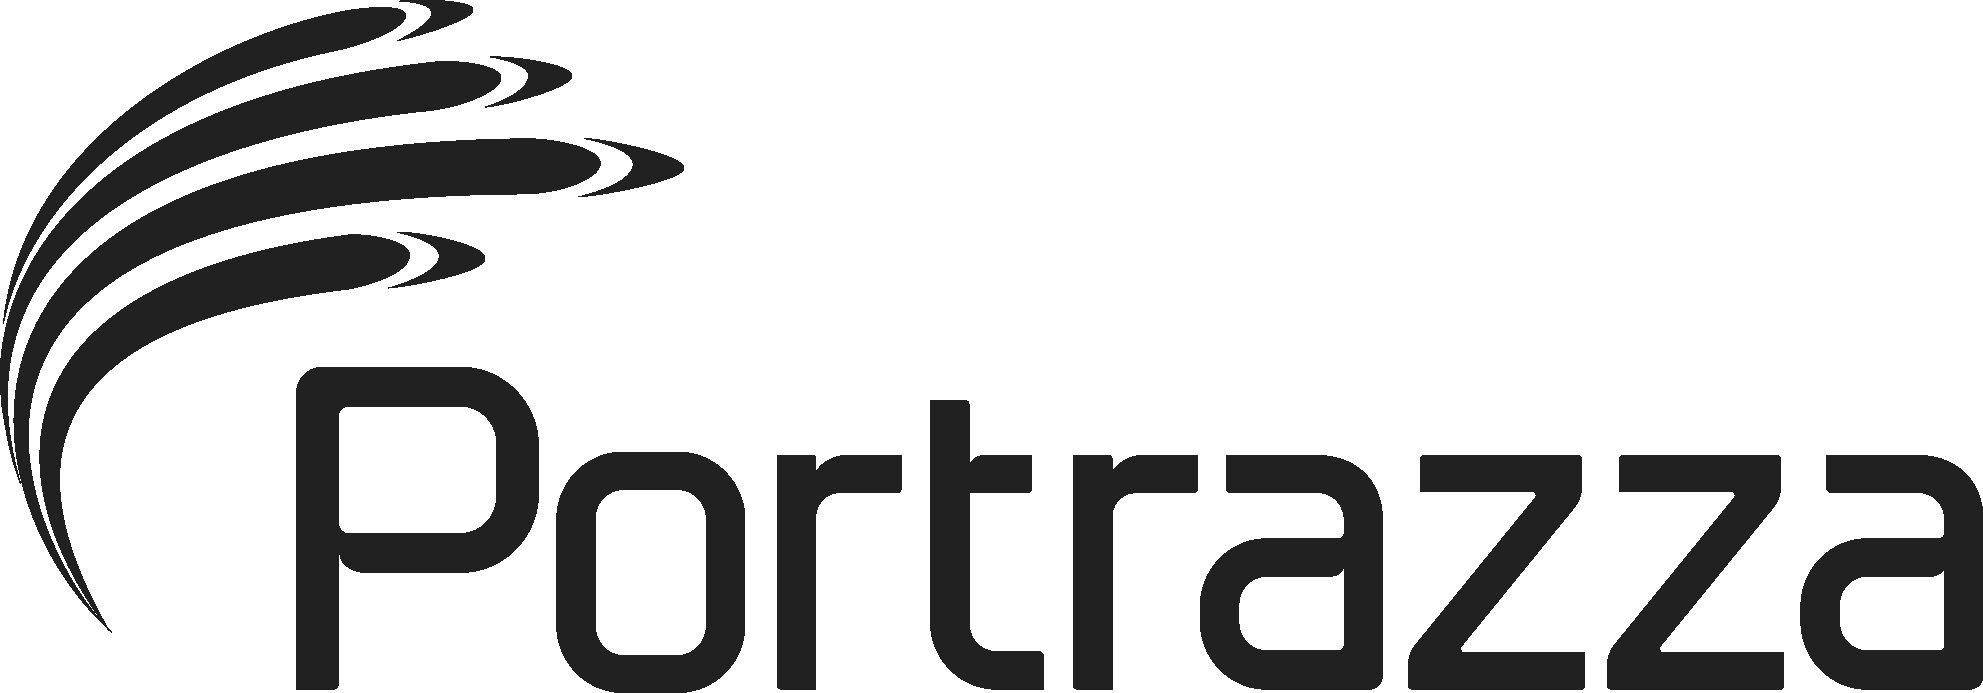 Trademark Logo PORTRAZZA